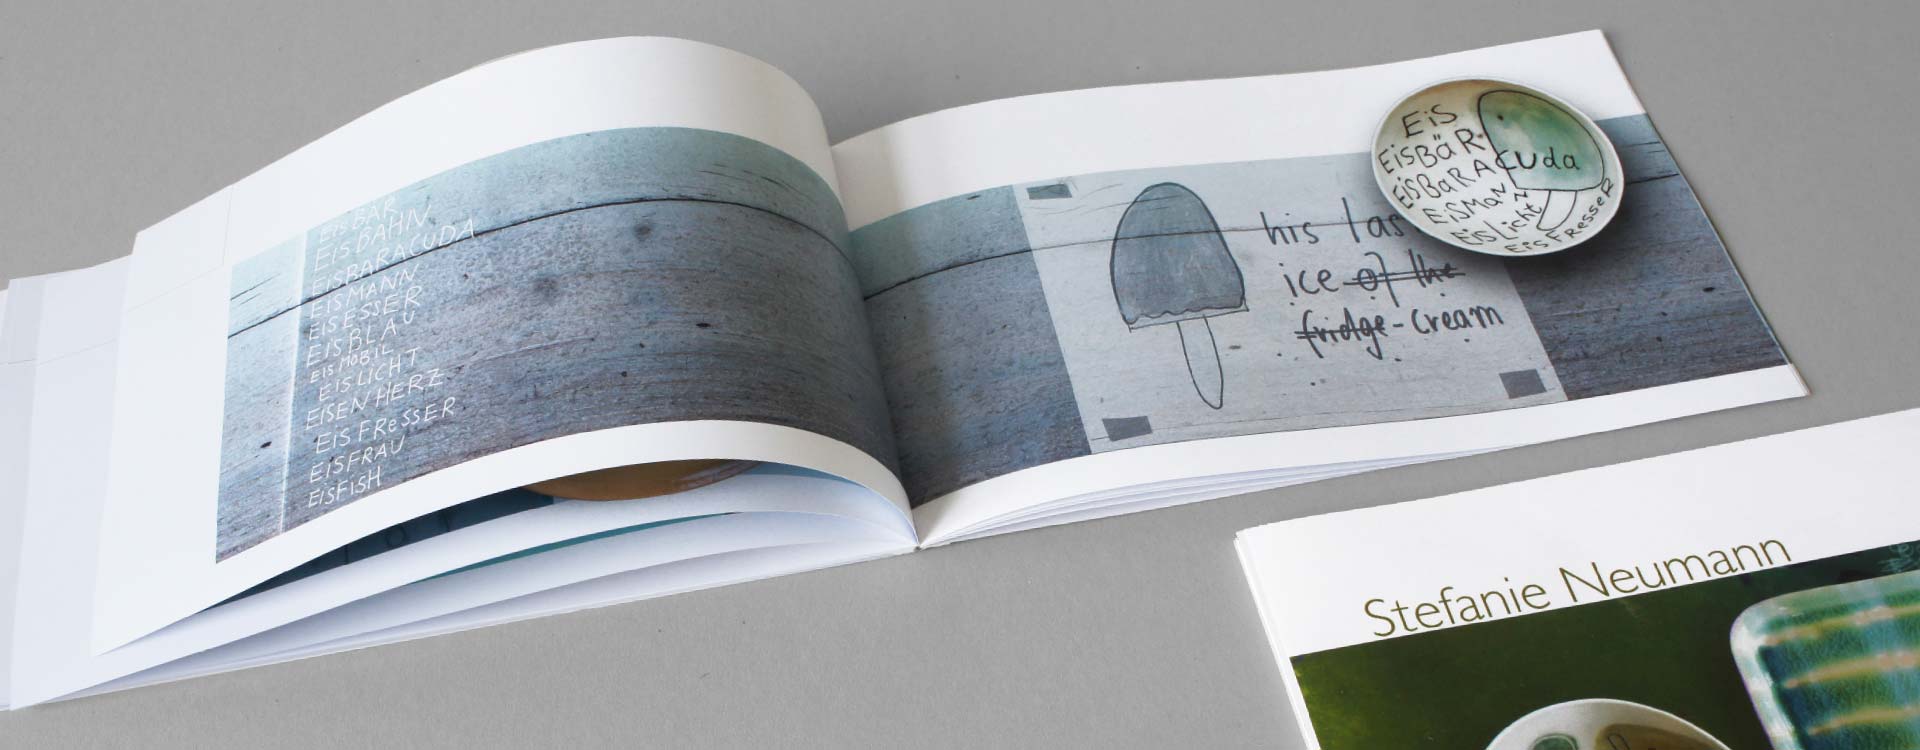 Katalog Stefanie Neumann, Keramik und Grafik; Design: Kattrin Richter | Büro für Grafikdesign